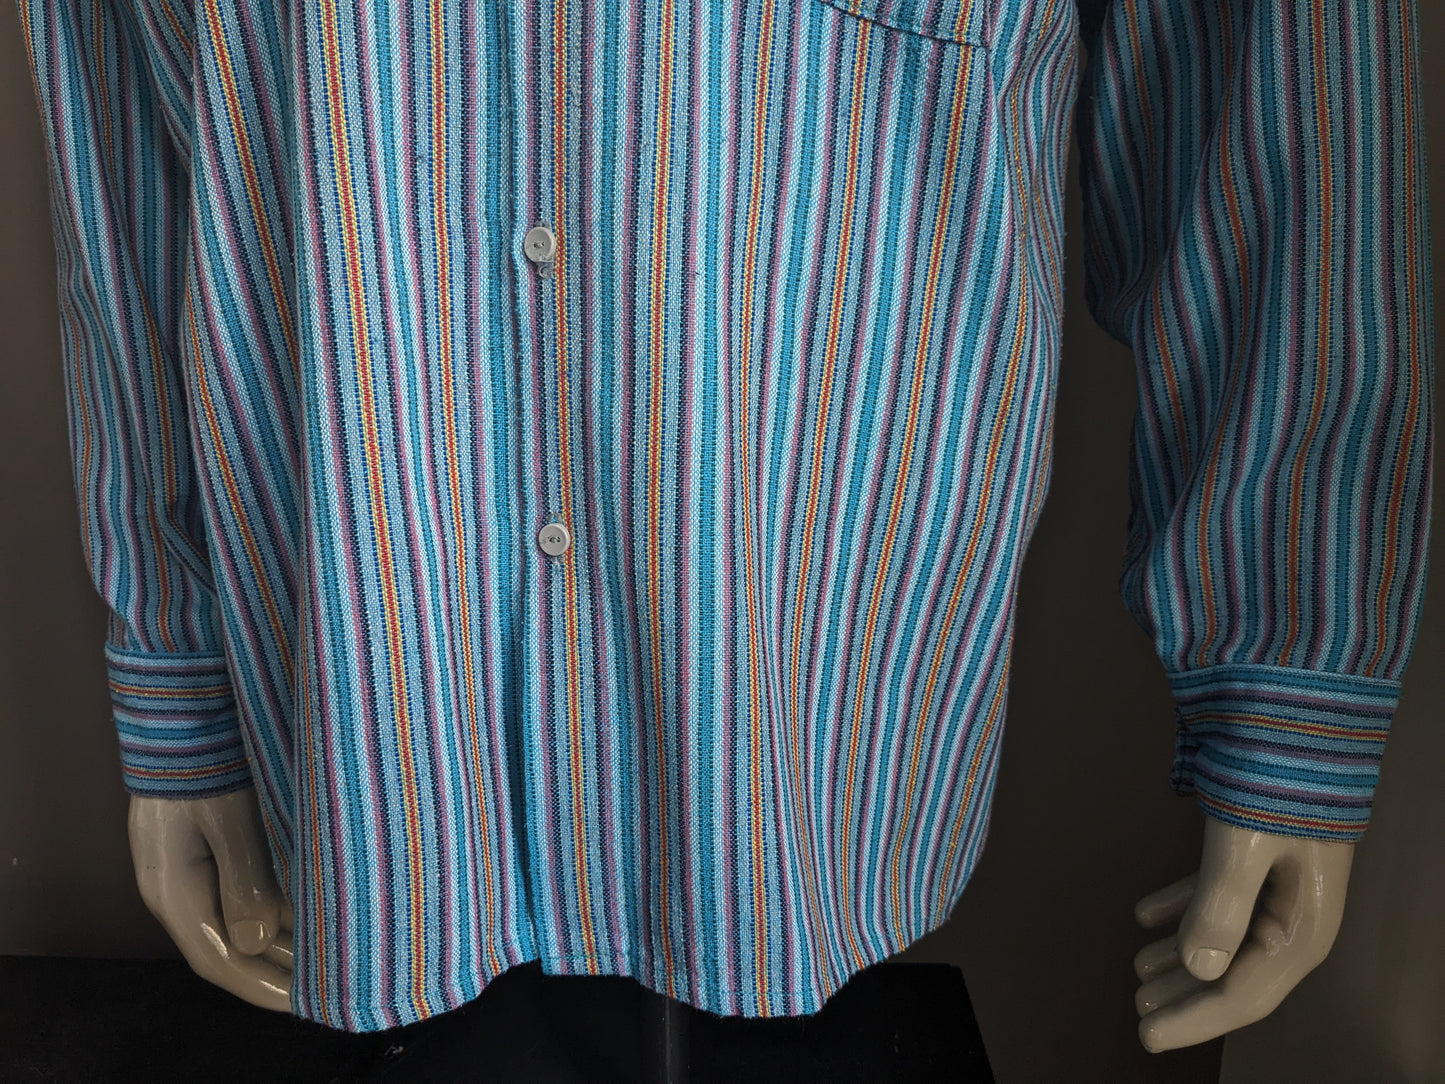 Vintage overhemd met mao / boeren- / opstaande kraag. Blauw Paars Rood Geel gestreept. Maat XL.